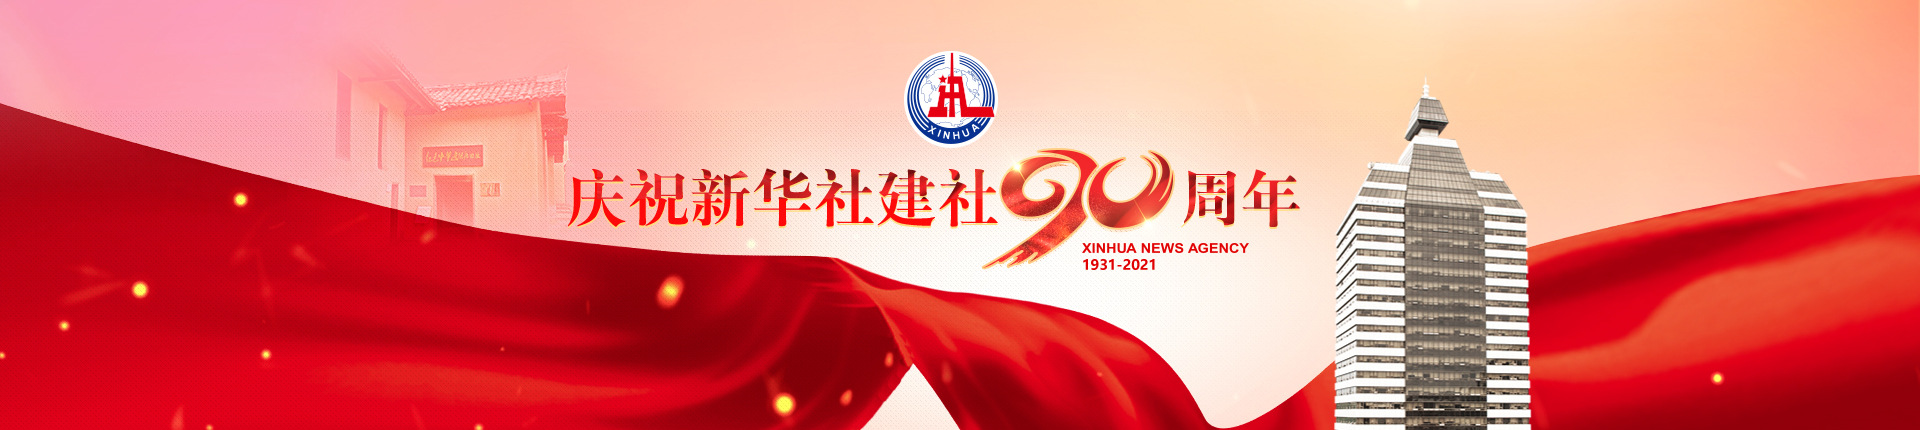 庆祝新华社建社90周年